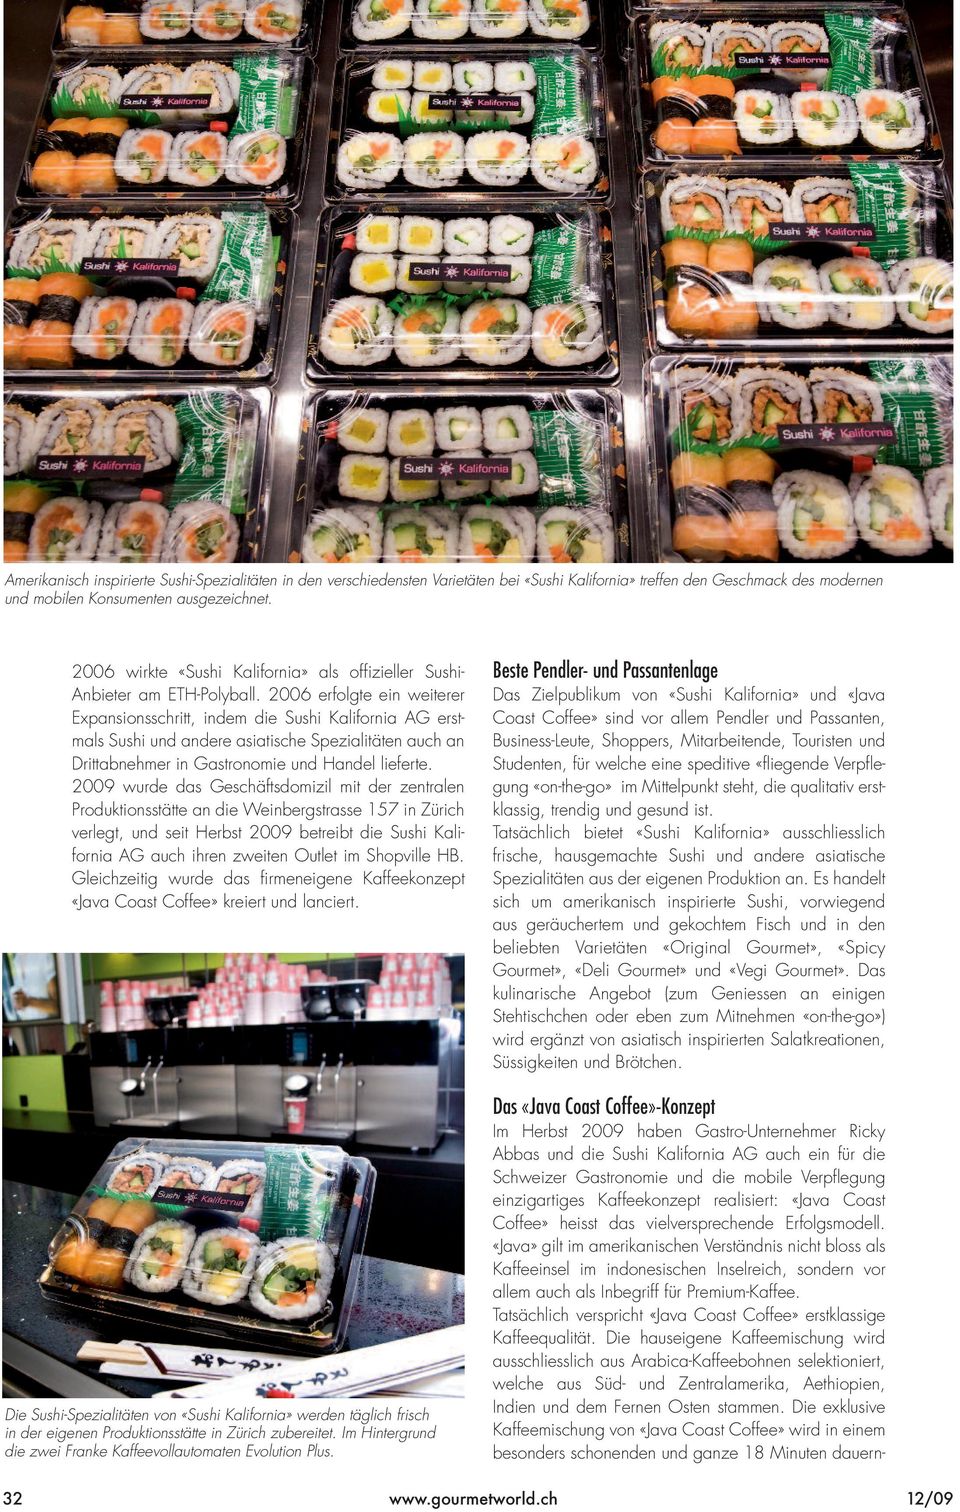 2006 erfolgte ein weiterer Expansionsschritt, indem die Sushi Kalifornia AG erstmals Sushi und andere asiatische Spezialitäten auch an Drittabnehmer in Gastronomie und Handel lieferte.